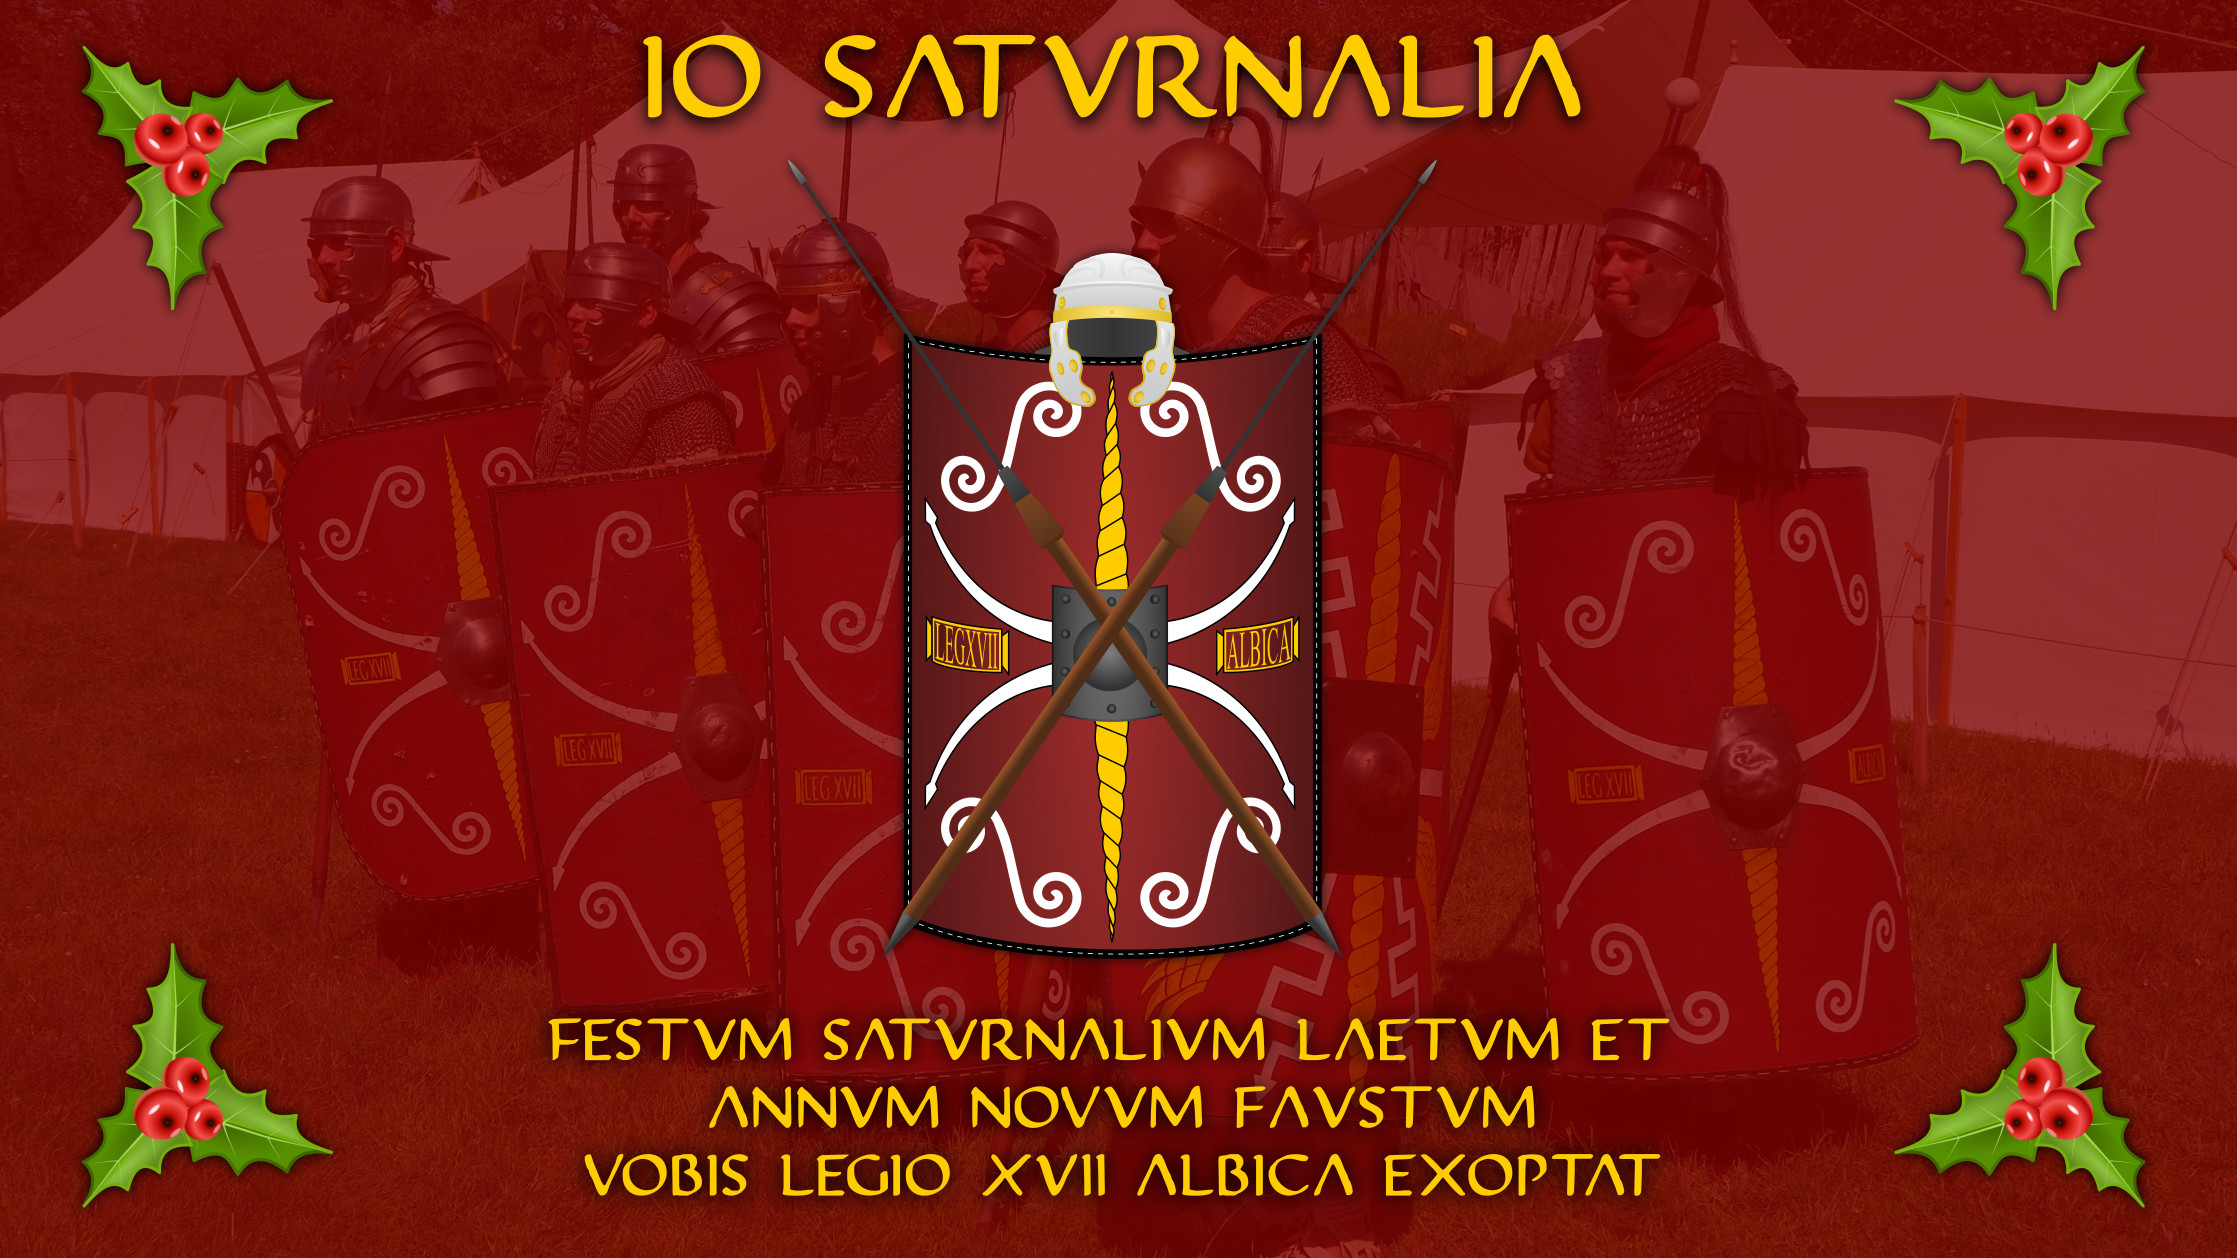 IO SATURNALIA - Festum saturnalium laetum et annum novum faustum vobis LEGIO XVII ALBICA exoptat